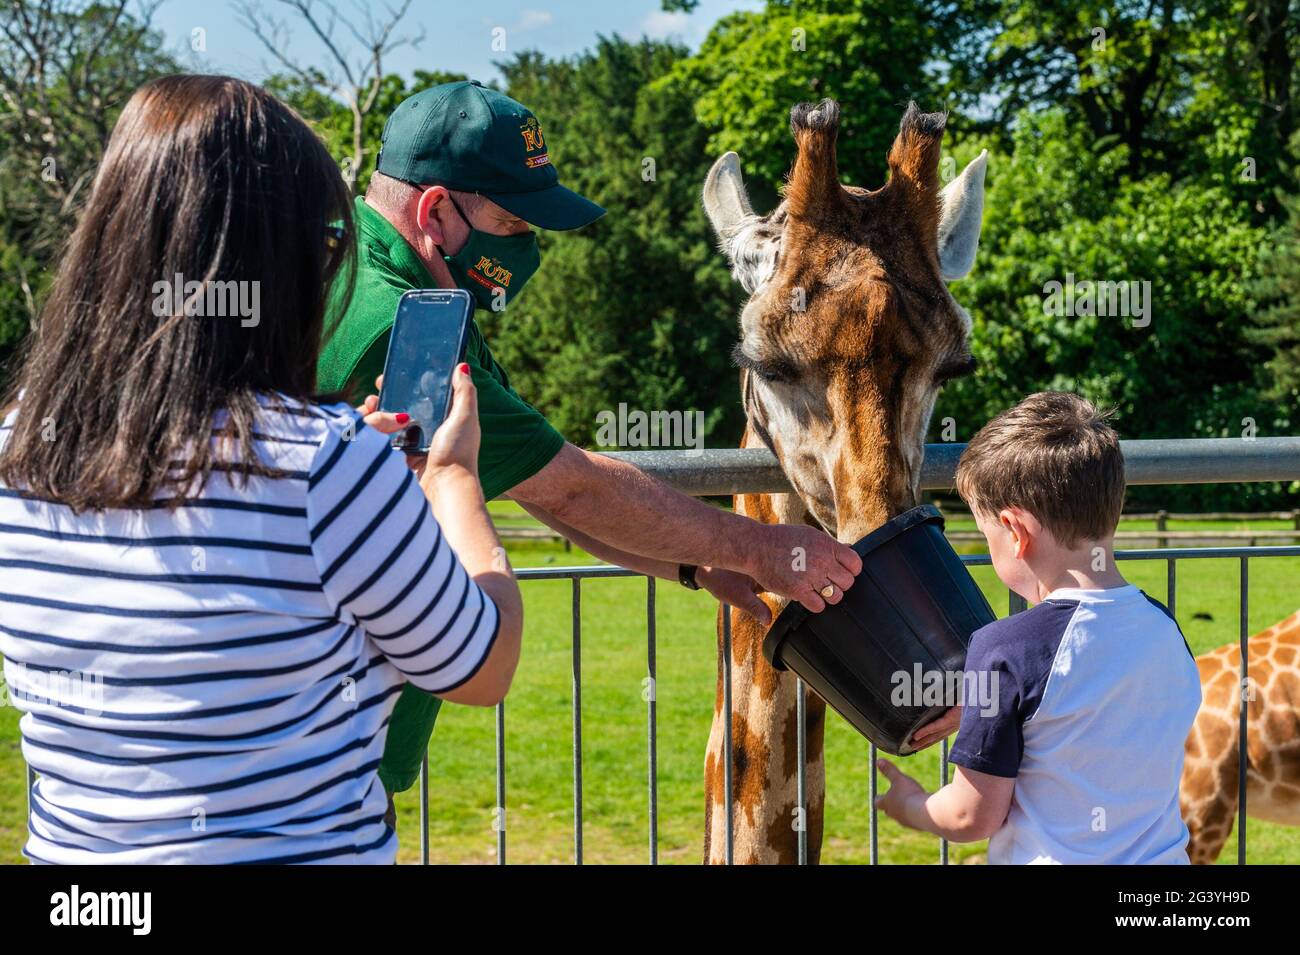 Cobh, Comté de Cork, Irlande. 18 juin 2021. Le temps ensoleillé a attiré beaucoup de visiteurs au parc animalier Fota Wildlife Park de Co. Cork aujourd'hui. Les girafes étaient très populaires parmi les visiteurs. Crédit : AG Newds/Alay Live News. Banque D'Images